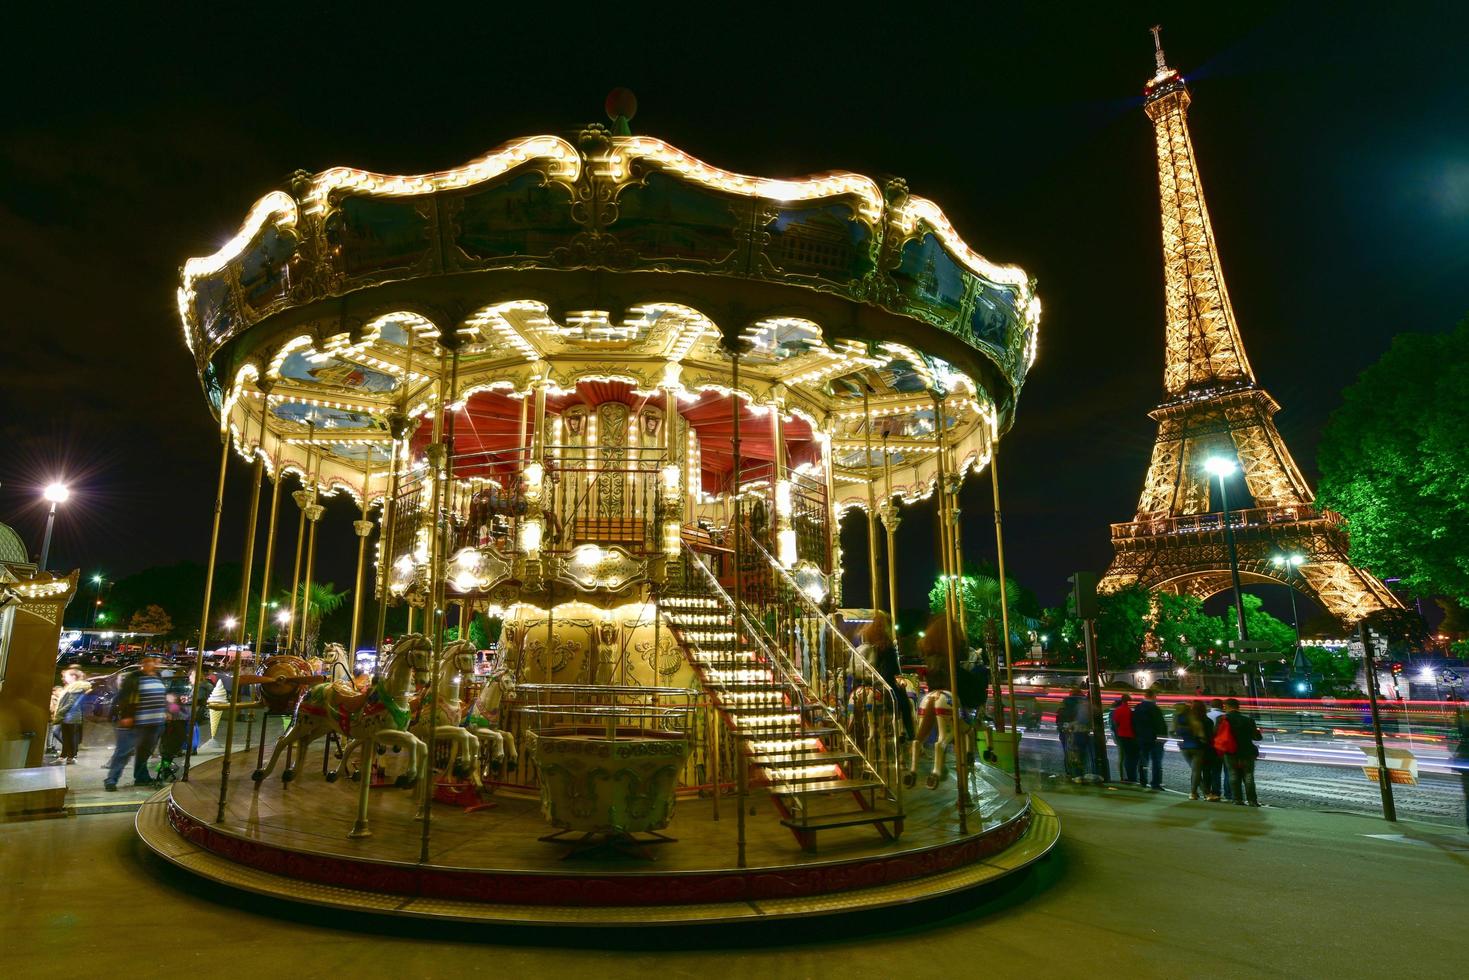 carrousel vintage illuminé près de la tour eiffel à paris, france, 2022 photo